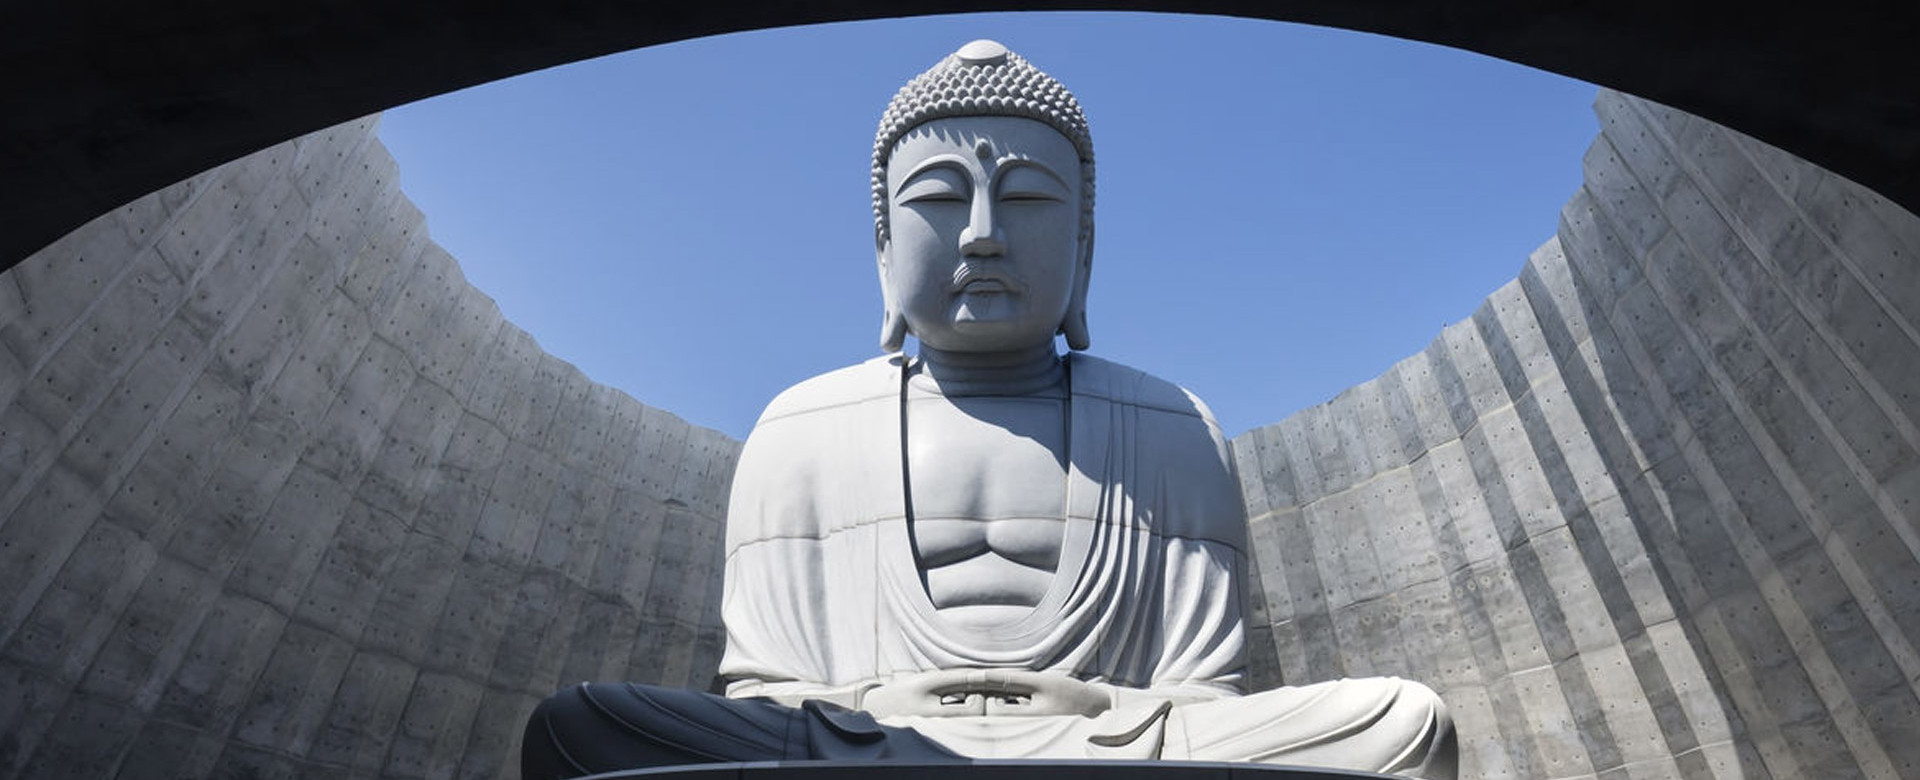 Тадао Андо Буда хълм